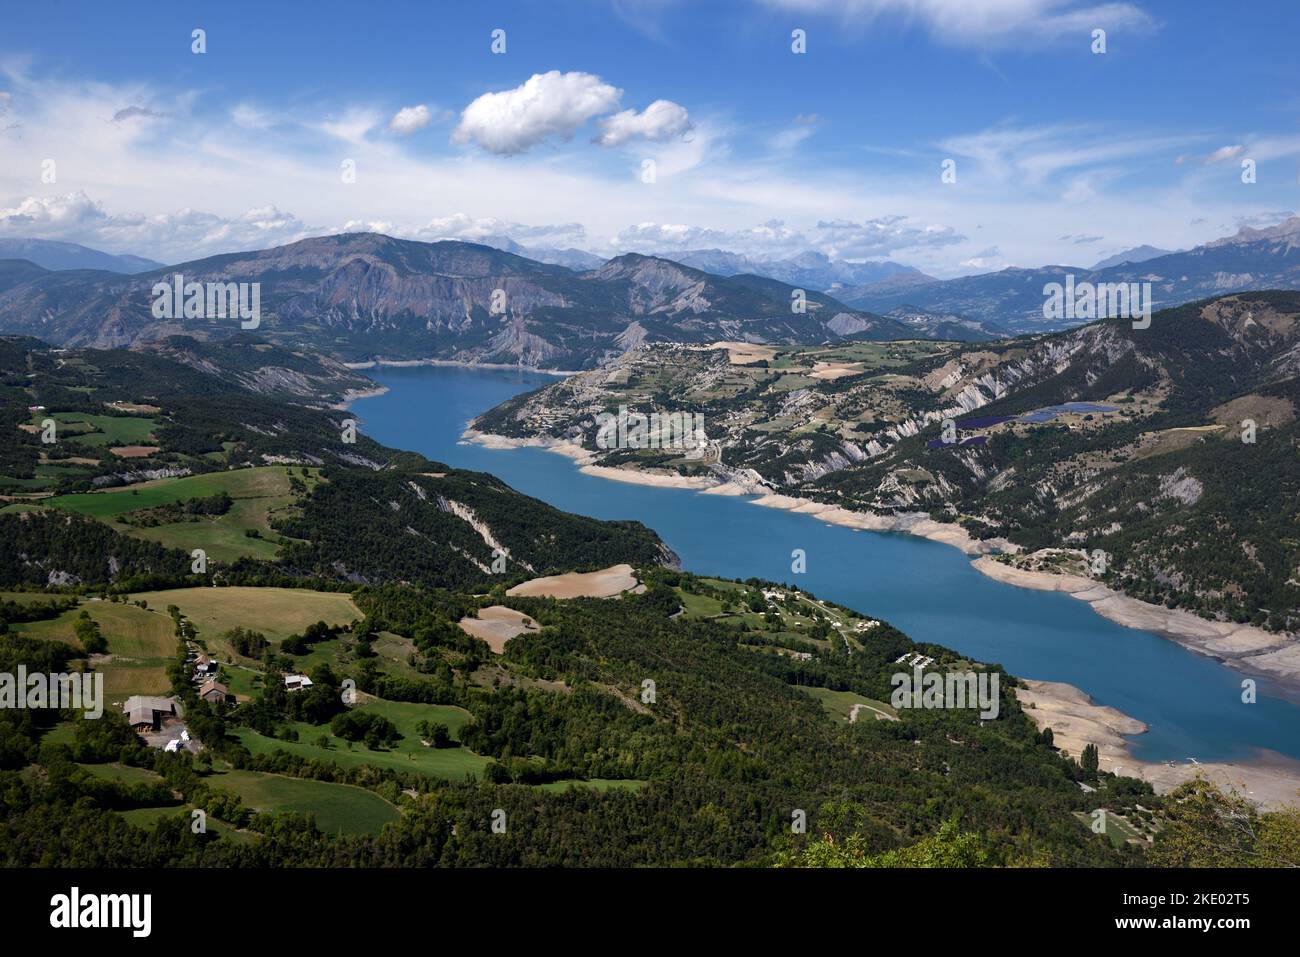 Luftaufnahme, Panorama, Panoramaaussicht oder Hochwinkelblick über den See oder den Stausee von Serre Ponçon in den französischen Alpen Stockfoto